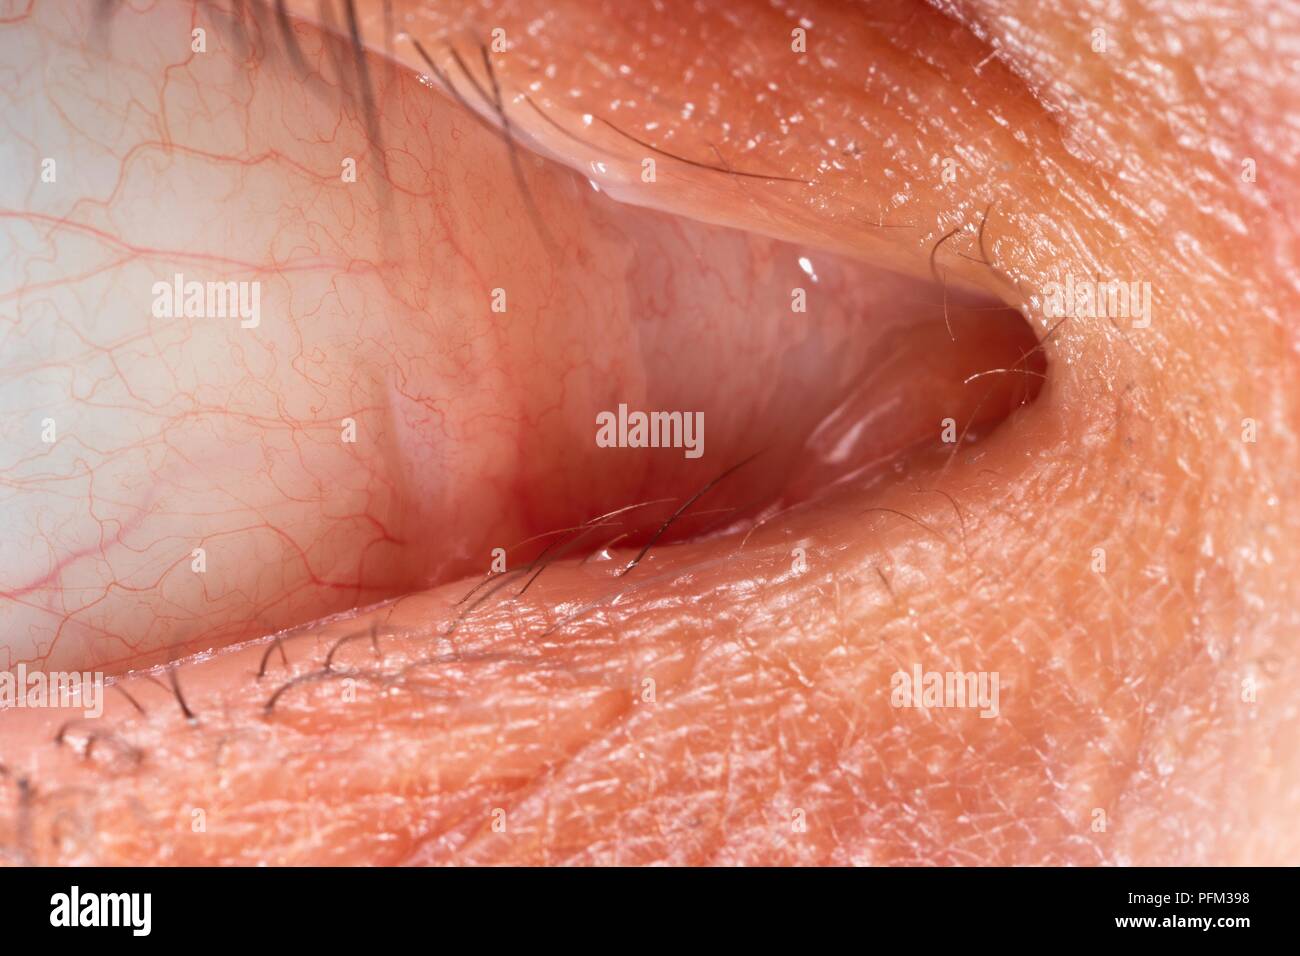 Occhio umano mostra ghiandola lacrimale, close-up Foto Stock